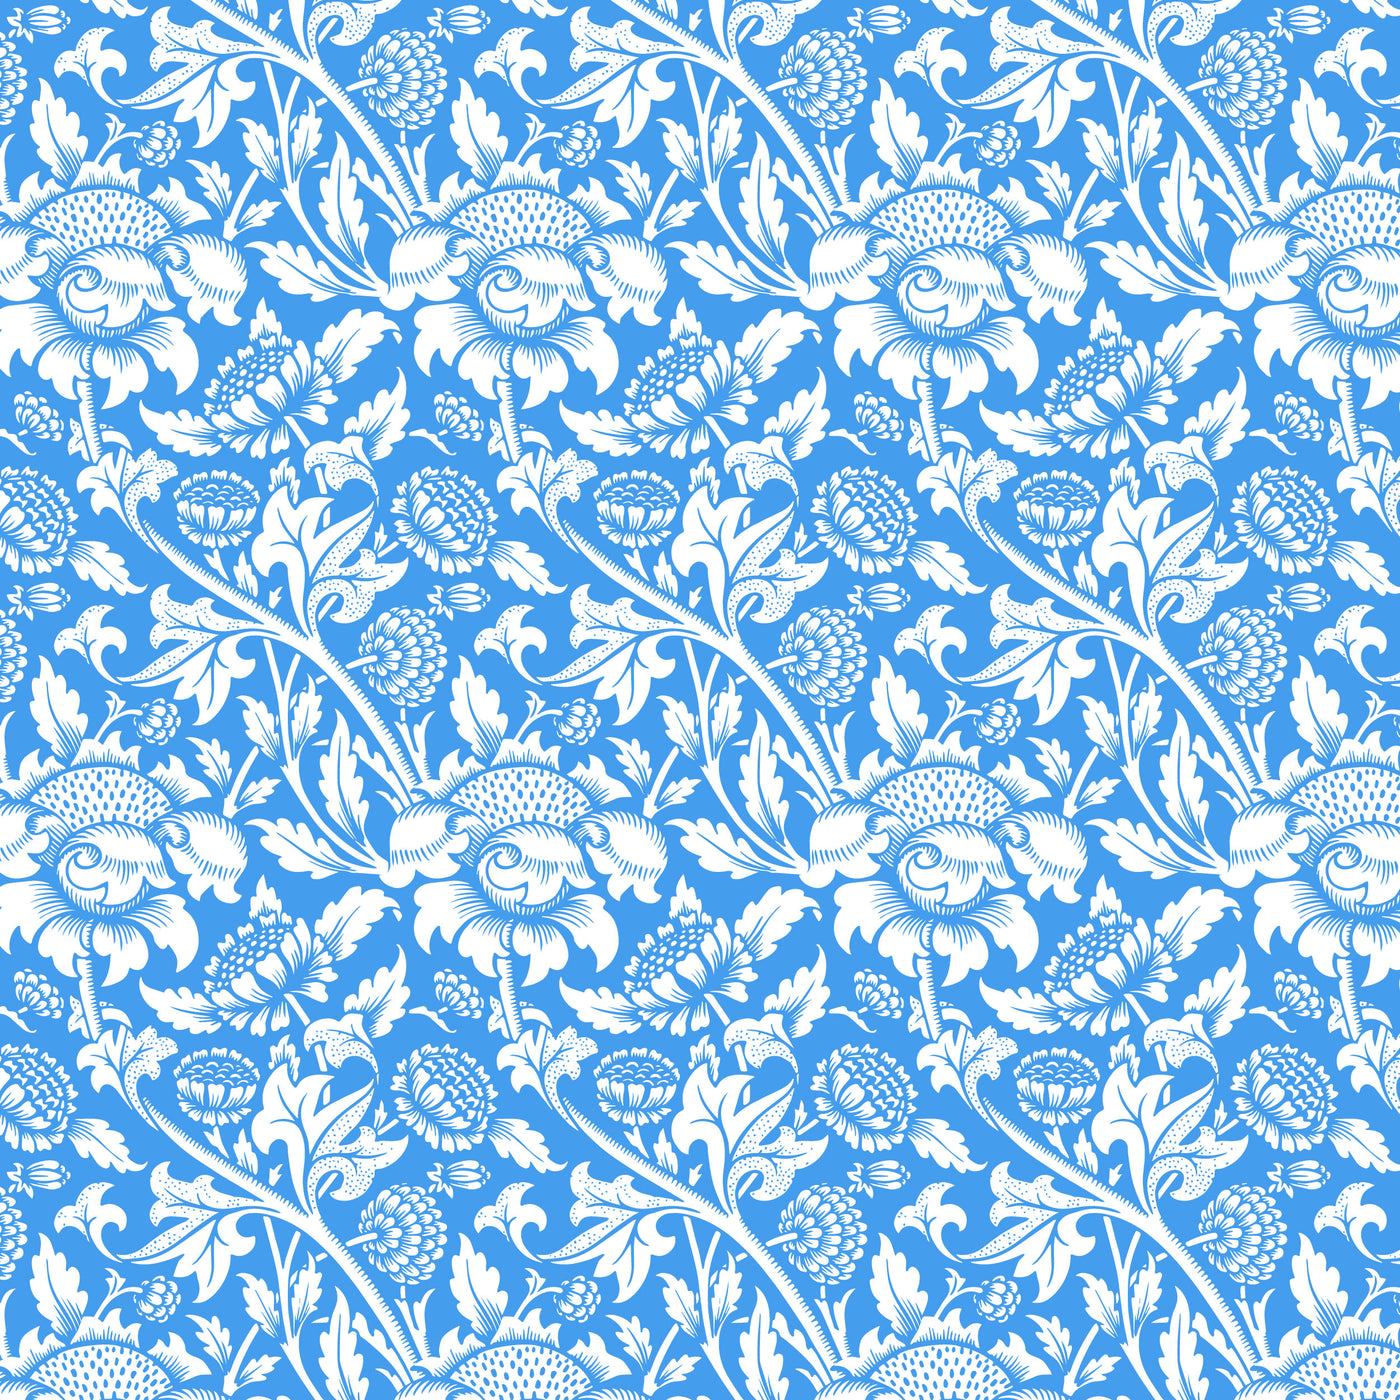 Scatter Cushion  - Vintage Floral Ornament - Blue